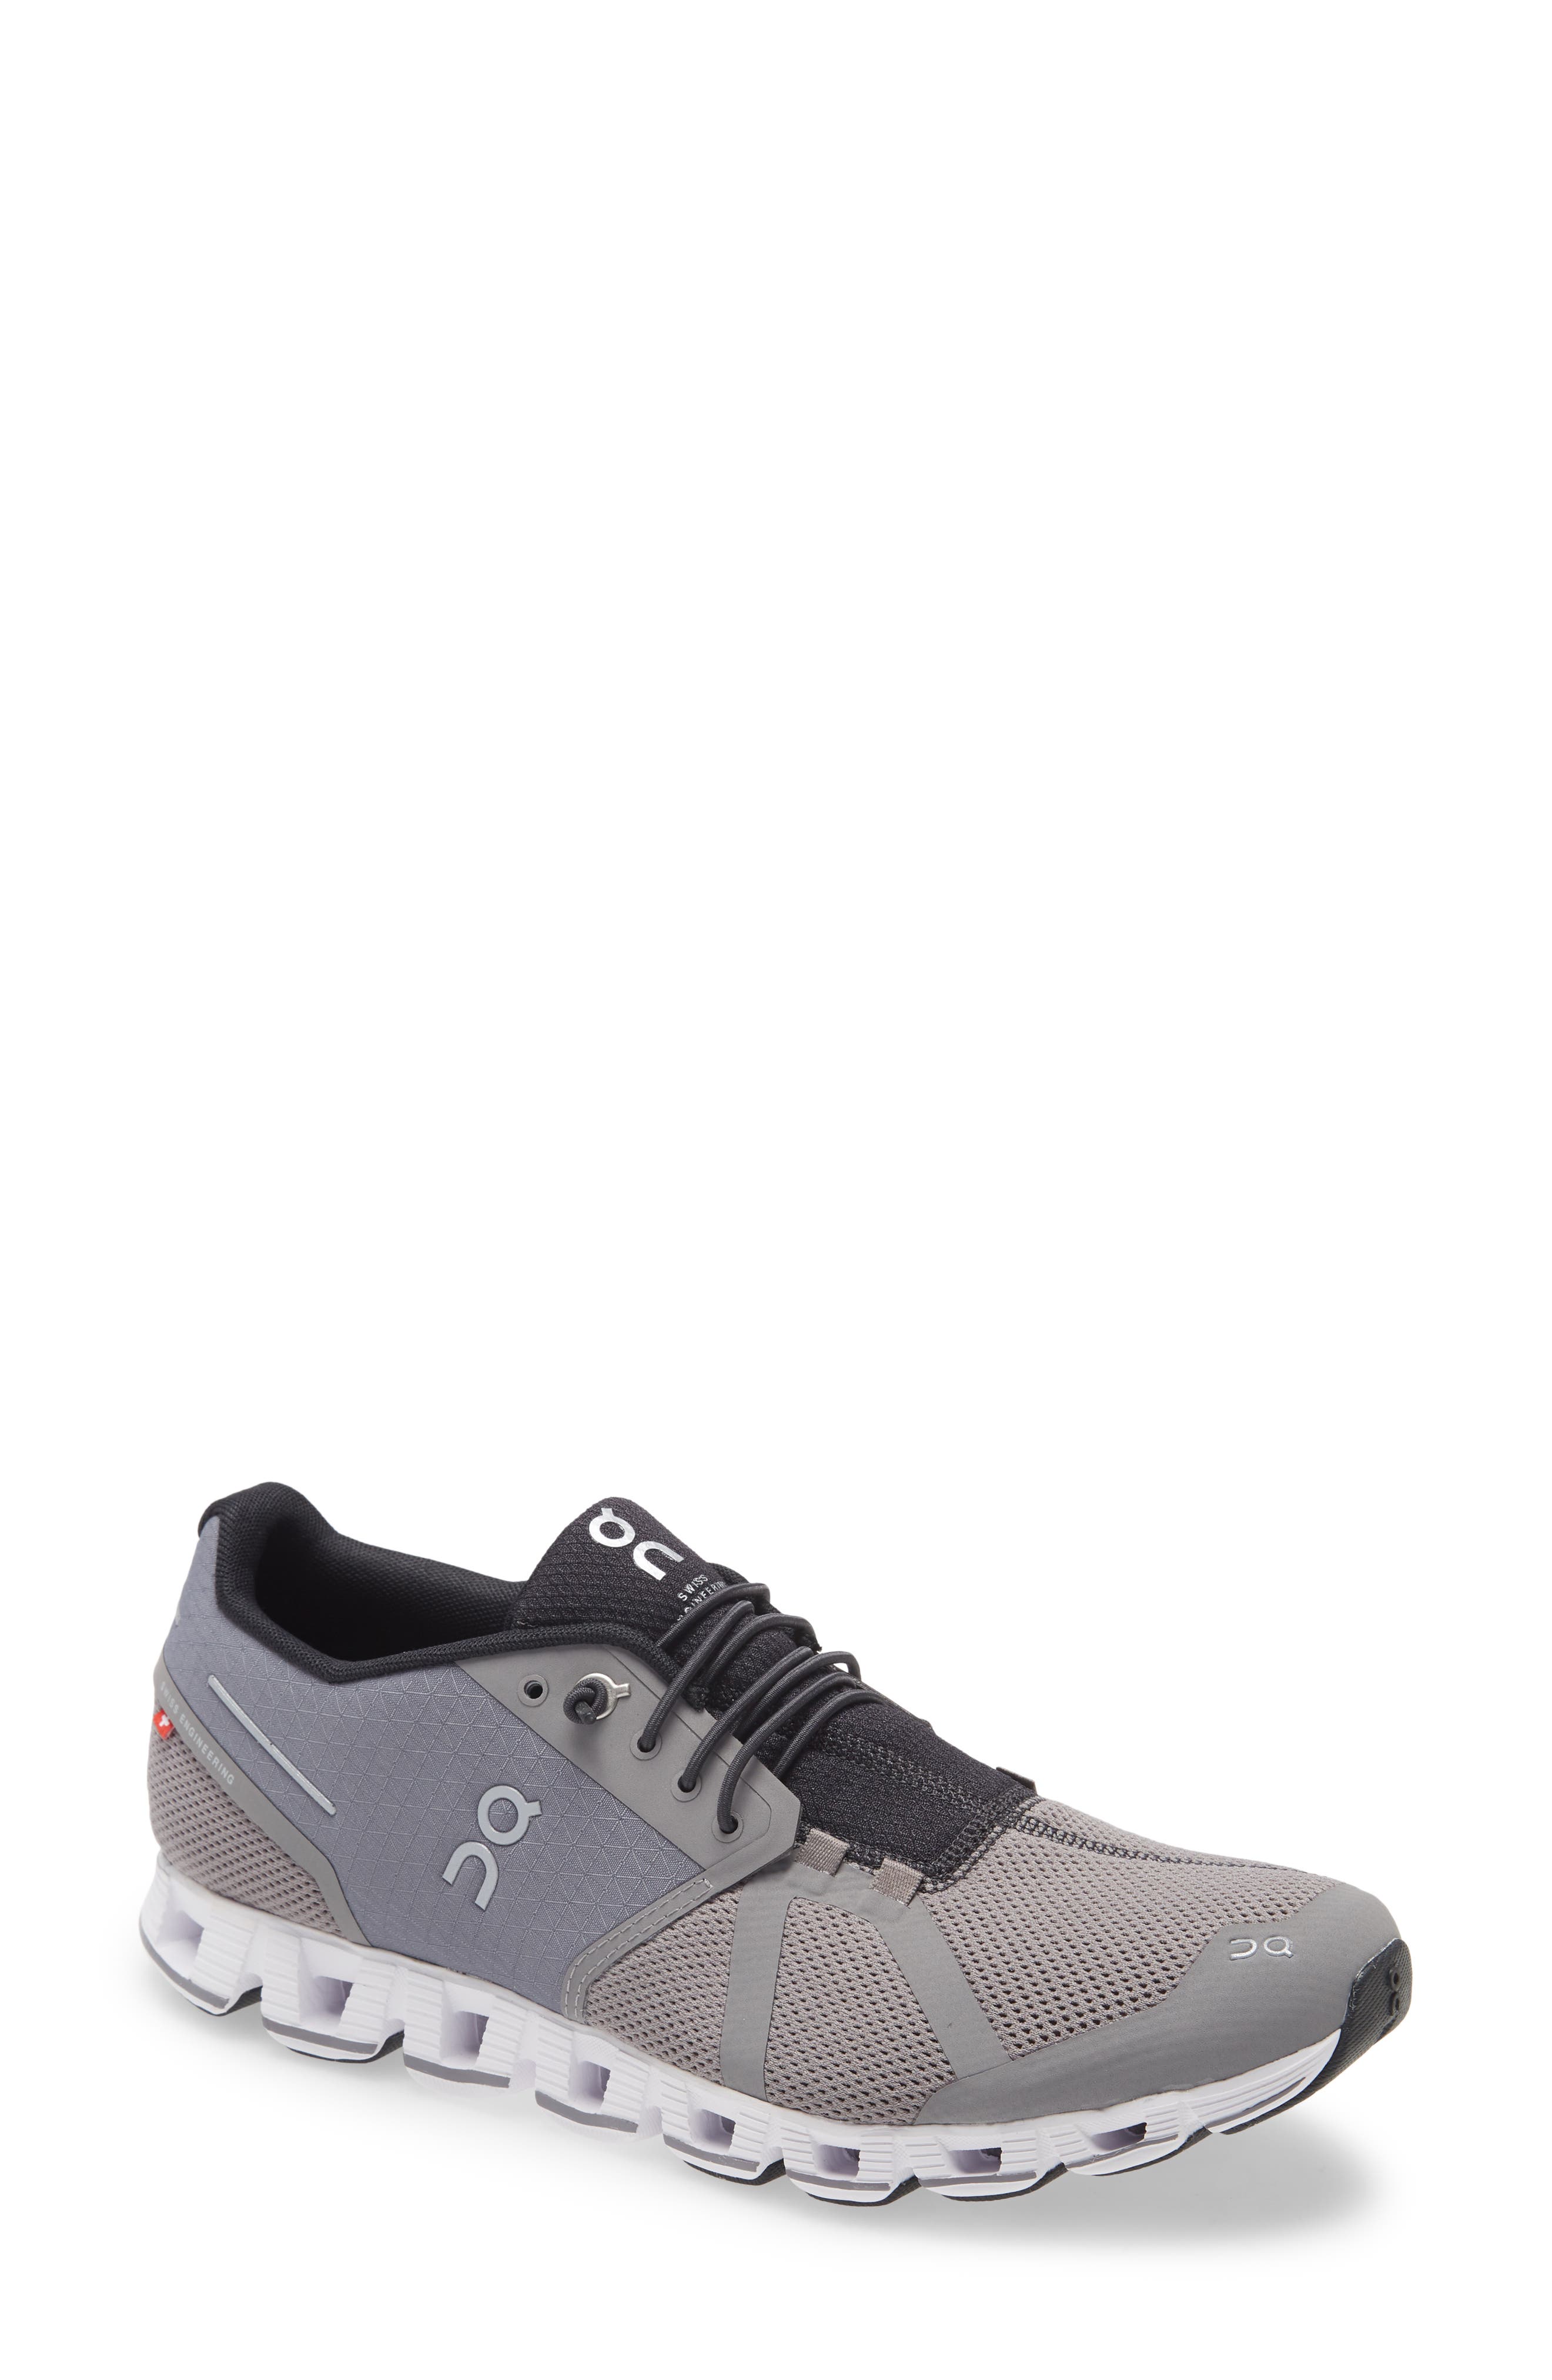 dark gray running shoes